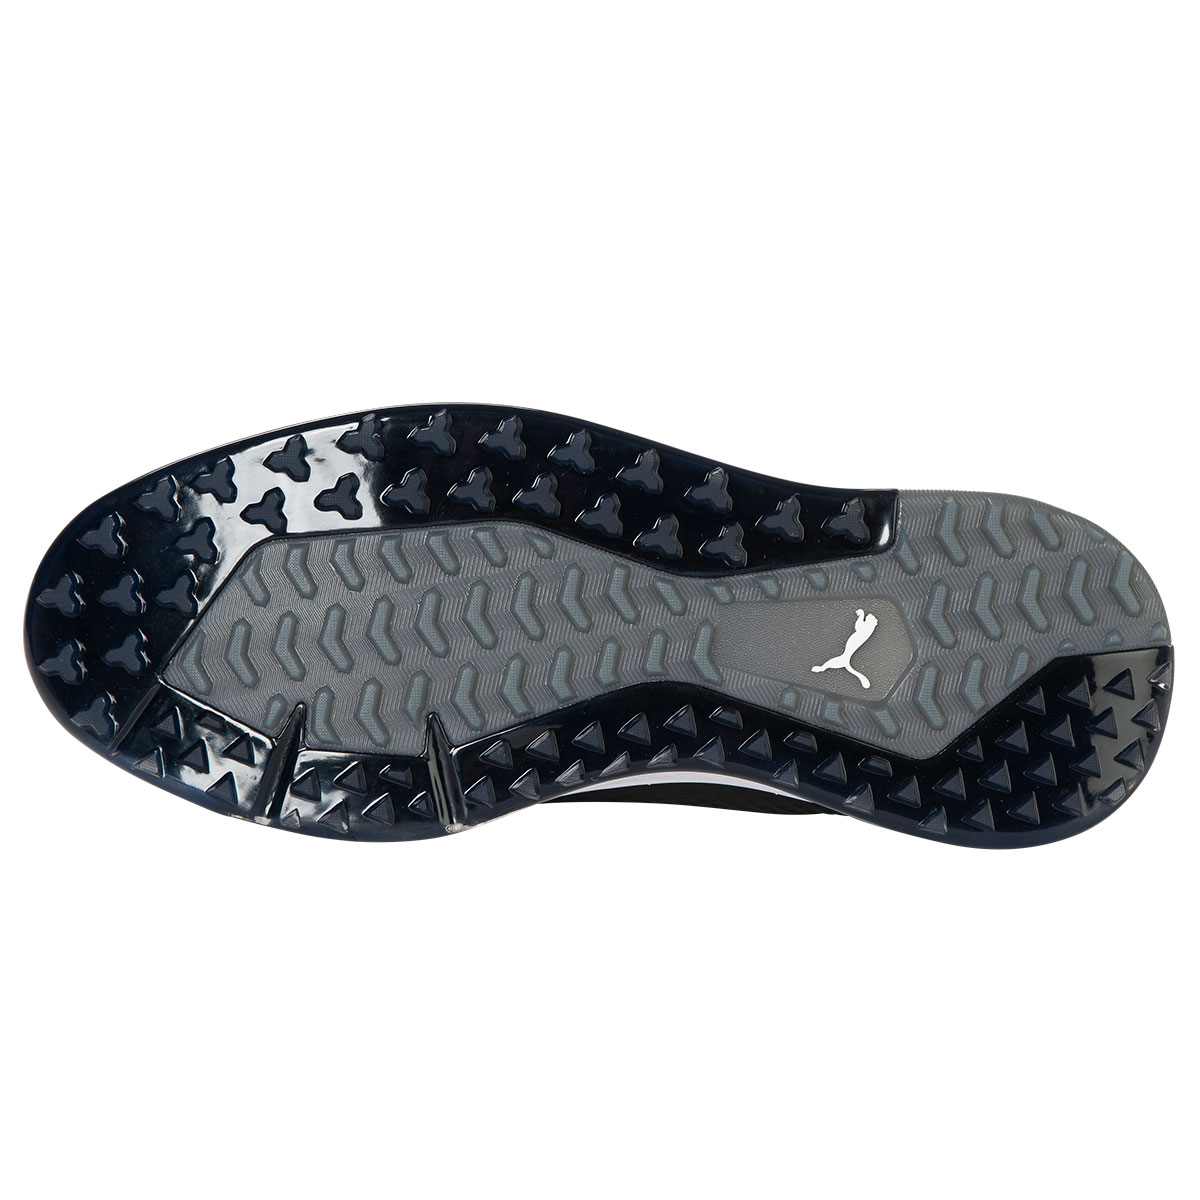 PUMA Men's PROADAPT ALPHACAT Waterproof Spikeless Golf Shoes from ...